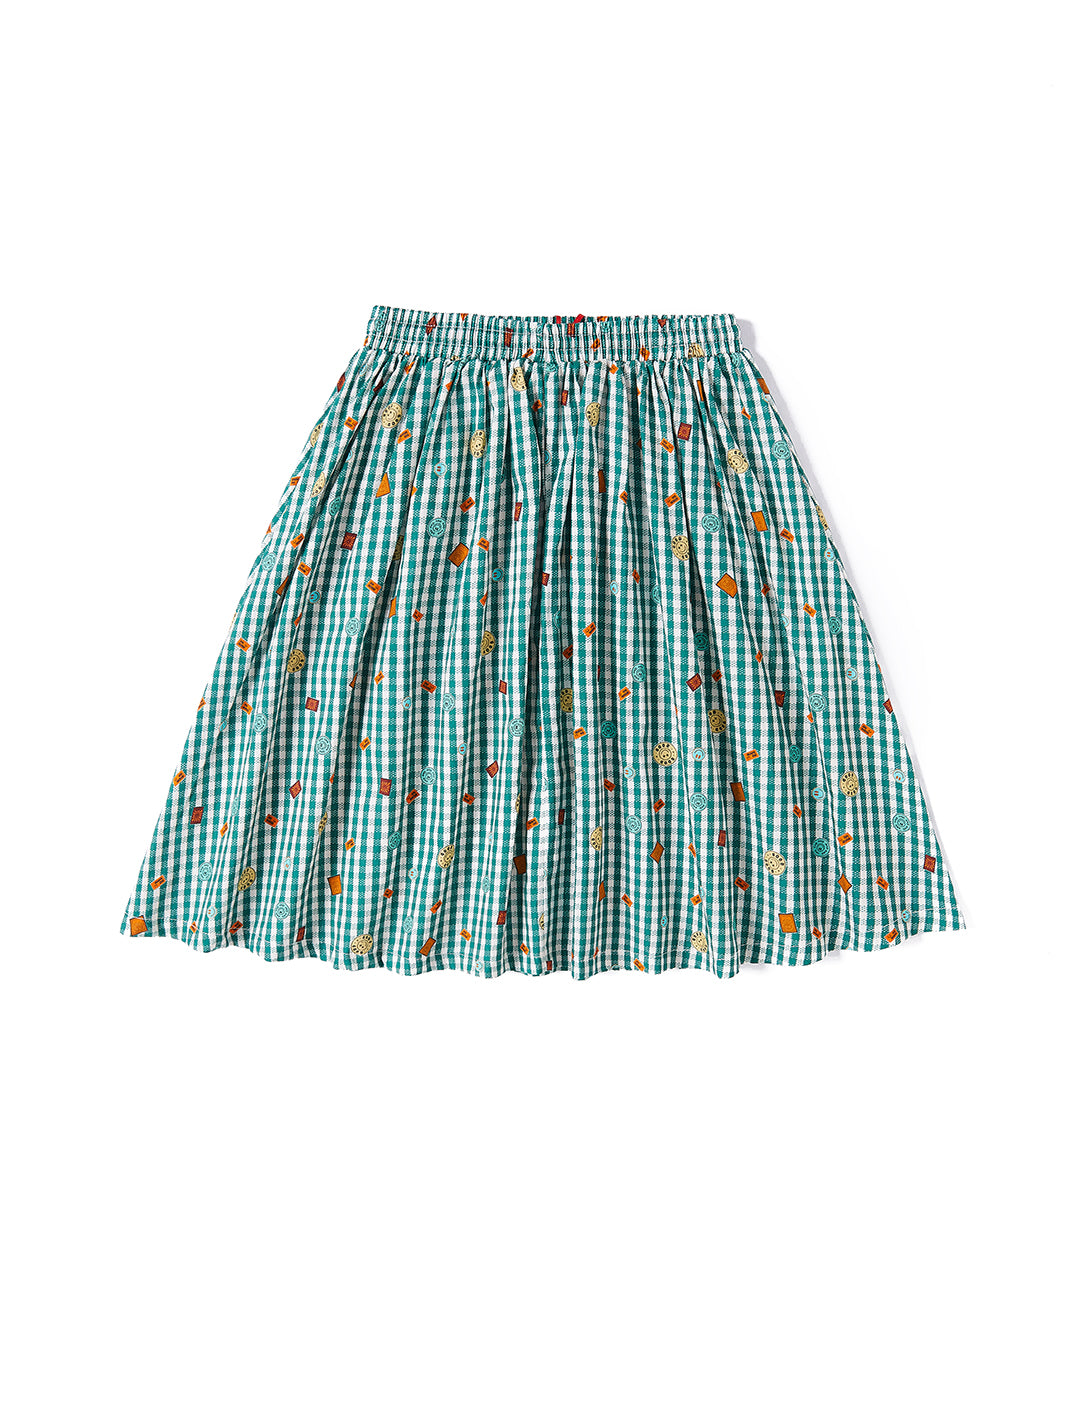 Gingham Smiley Skirt